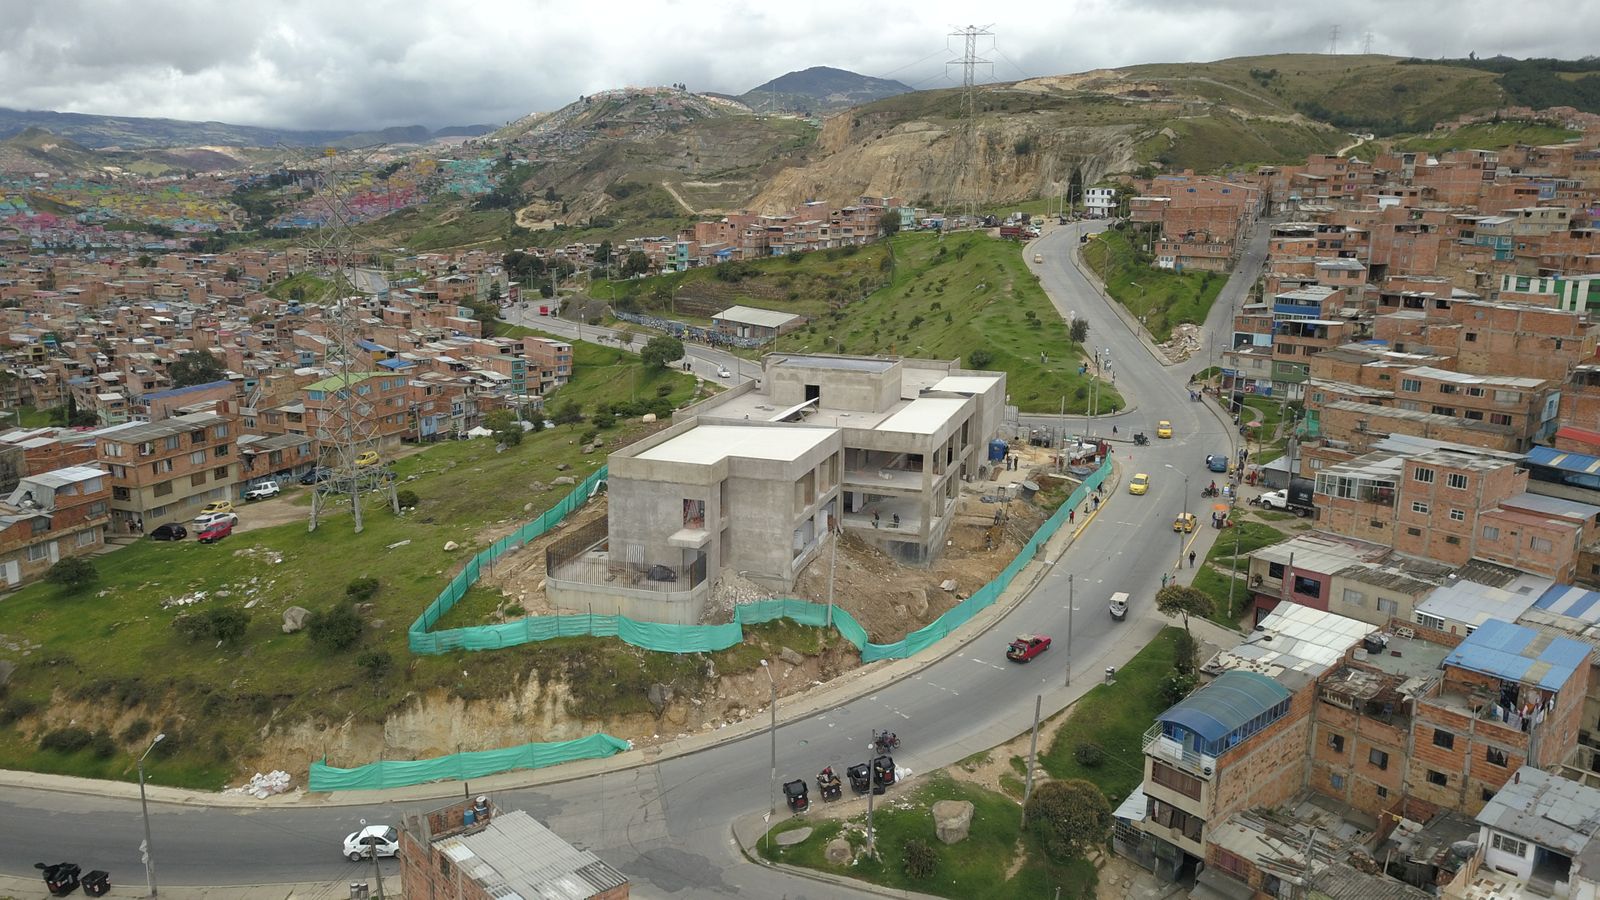 Distrito inaugura el nuevo Centro de Salud Manuela Beltrán que se suma a los 247 mil millones de inversión social en Ciudad Bolívar